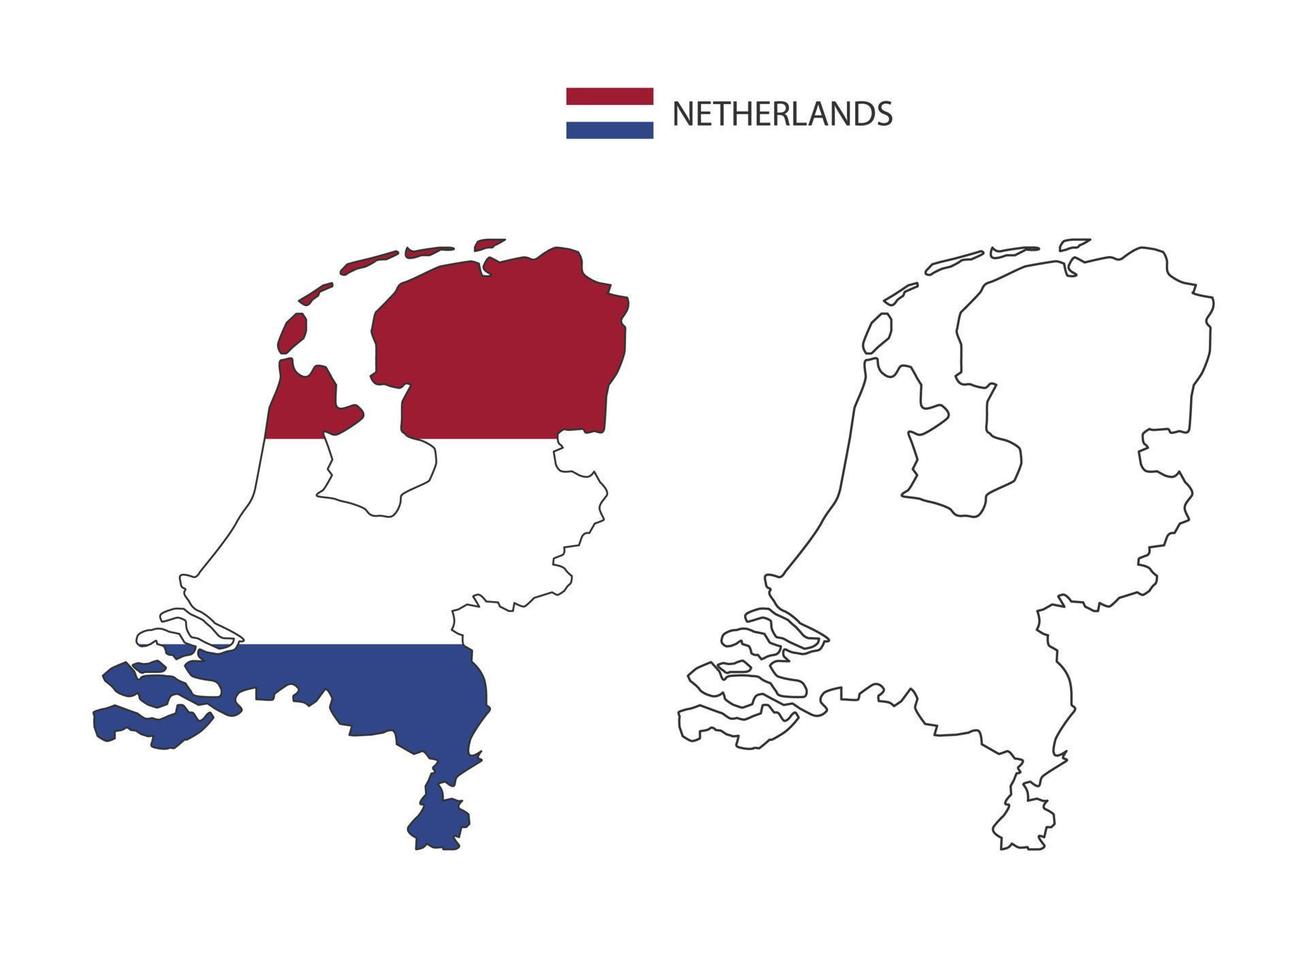 Holanda mapa vetor da cidade dividido pelo estilo de simplicidade de contorno. tem 2 versões, versão de linha fina preta e cor da versão da bandeira do país. ambos os mapas estavam no fundo branco.